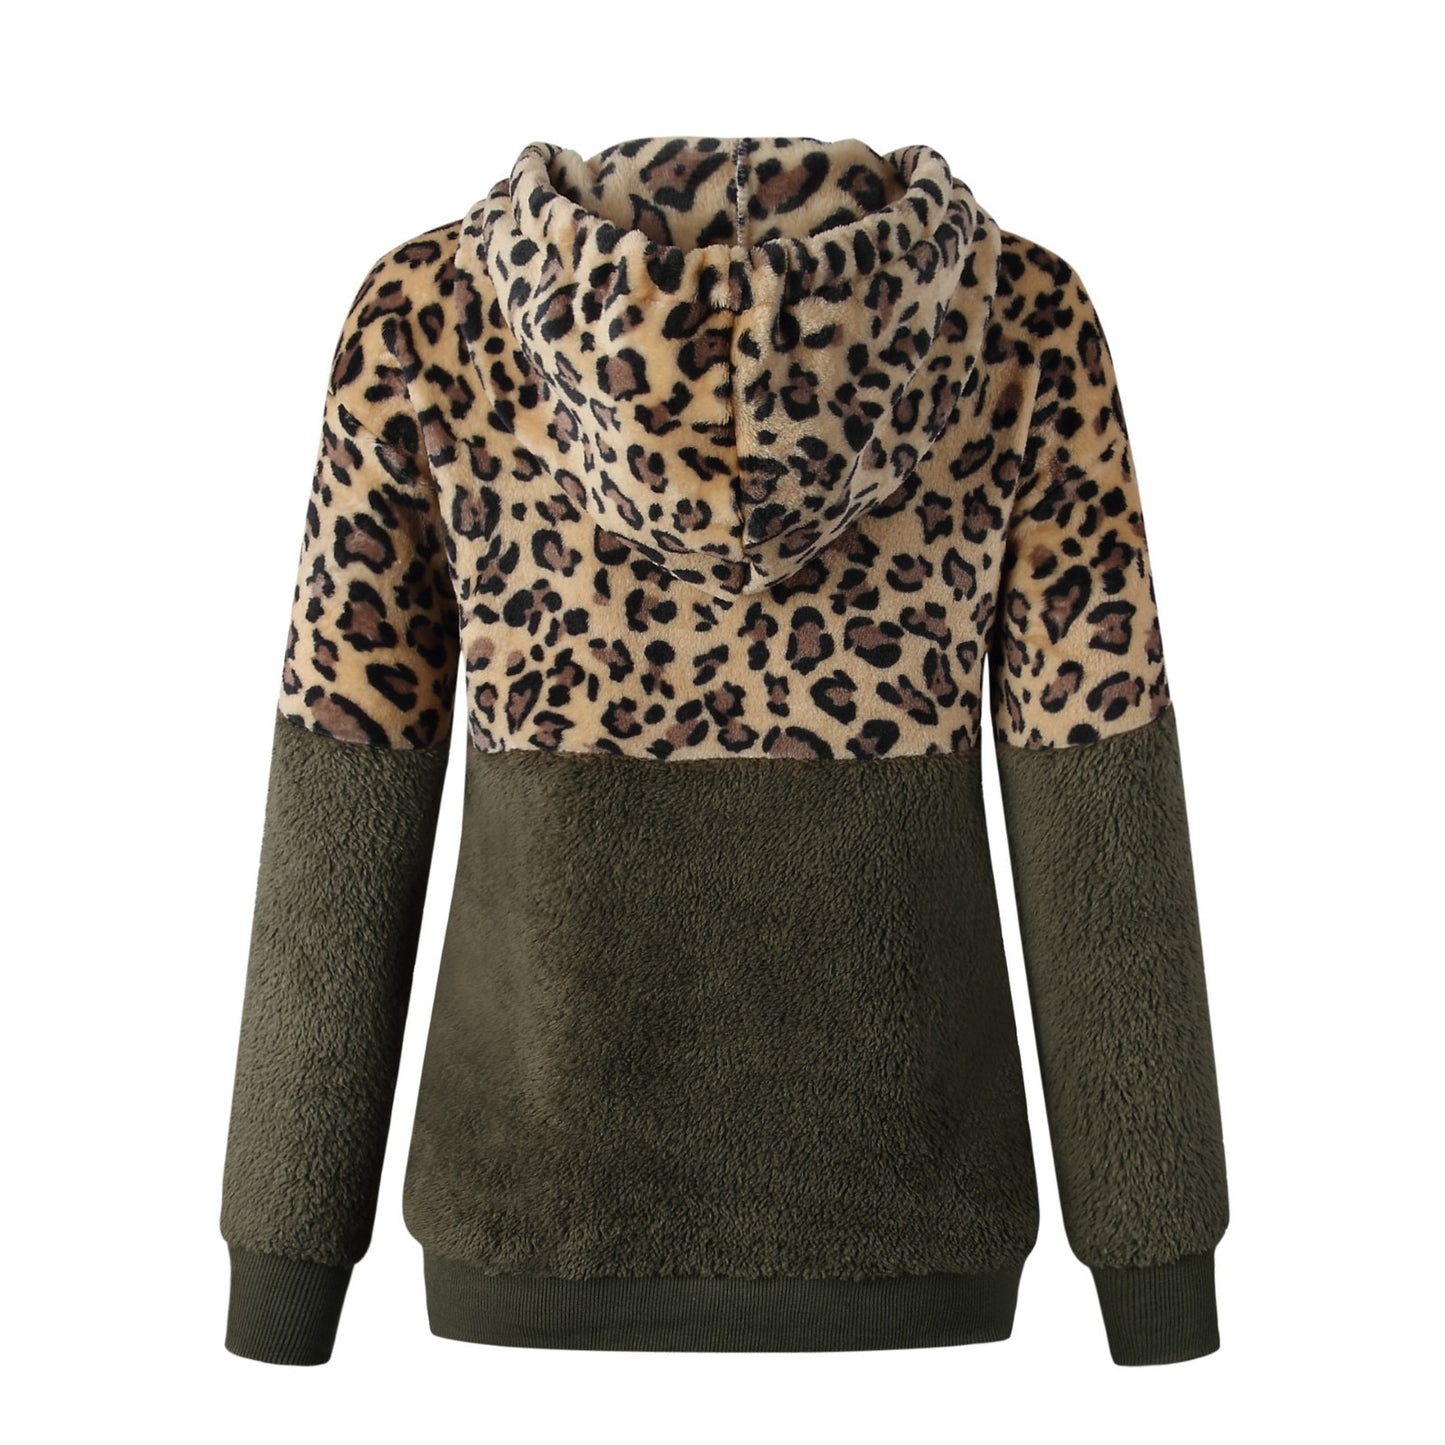 S,M,L,XL,2XL,3XL,4XL Sweatshirt Leopard Print Winter Hoodie - Fashion Damsel